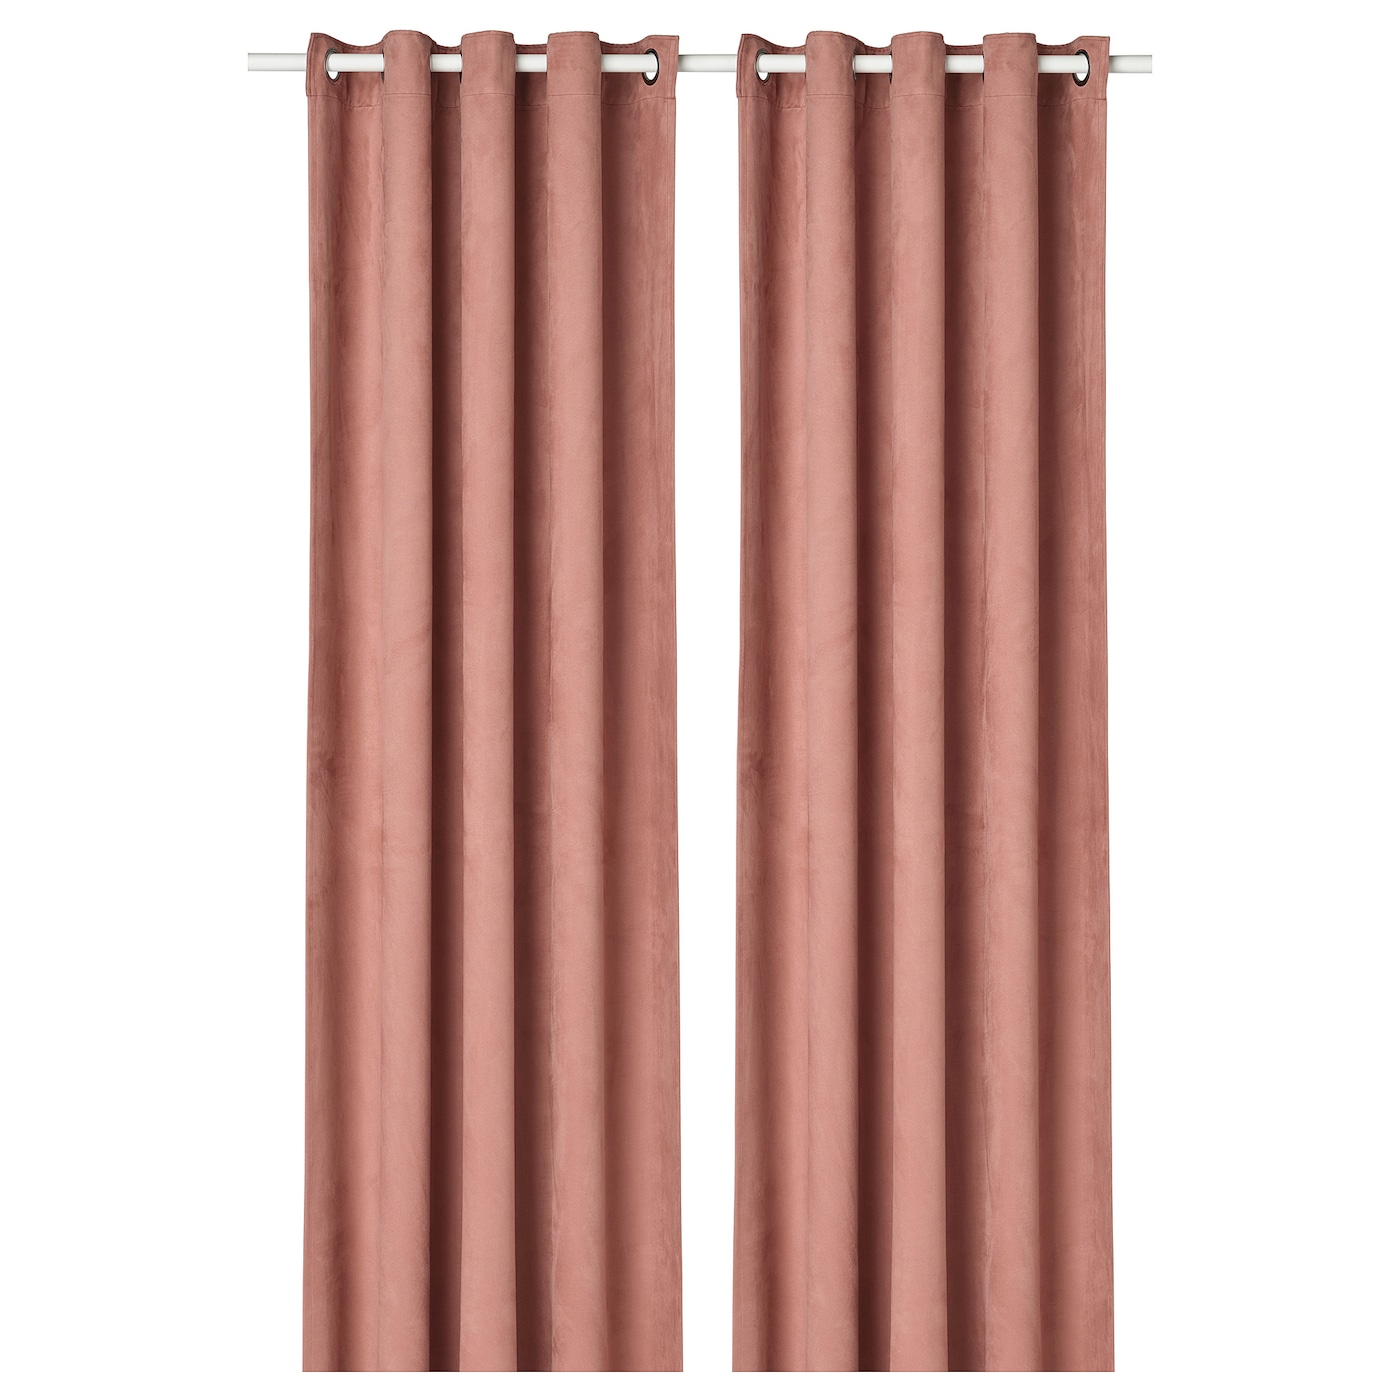 Затемняющая штора, 2 шт. - IKEA BIRTNA, 145x300, светло-розовый, БРИТНА ИКЕА